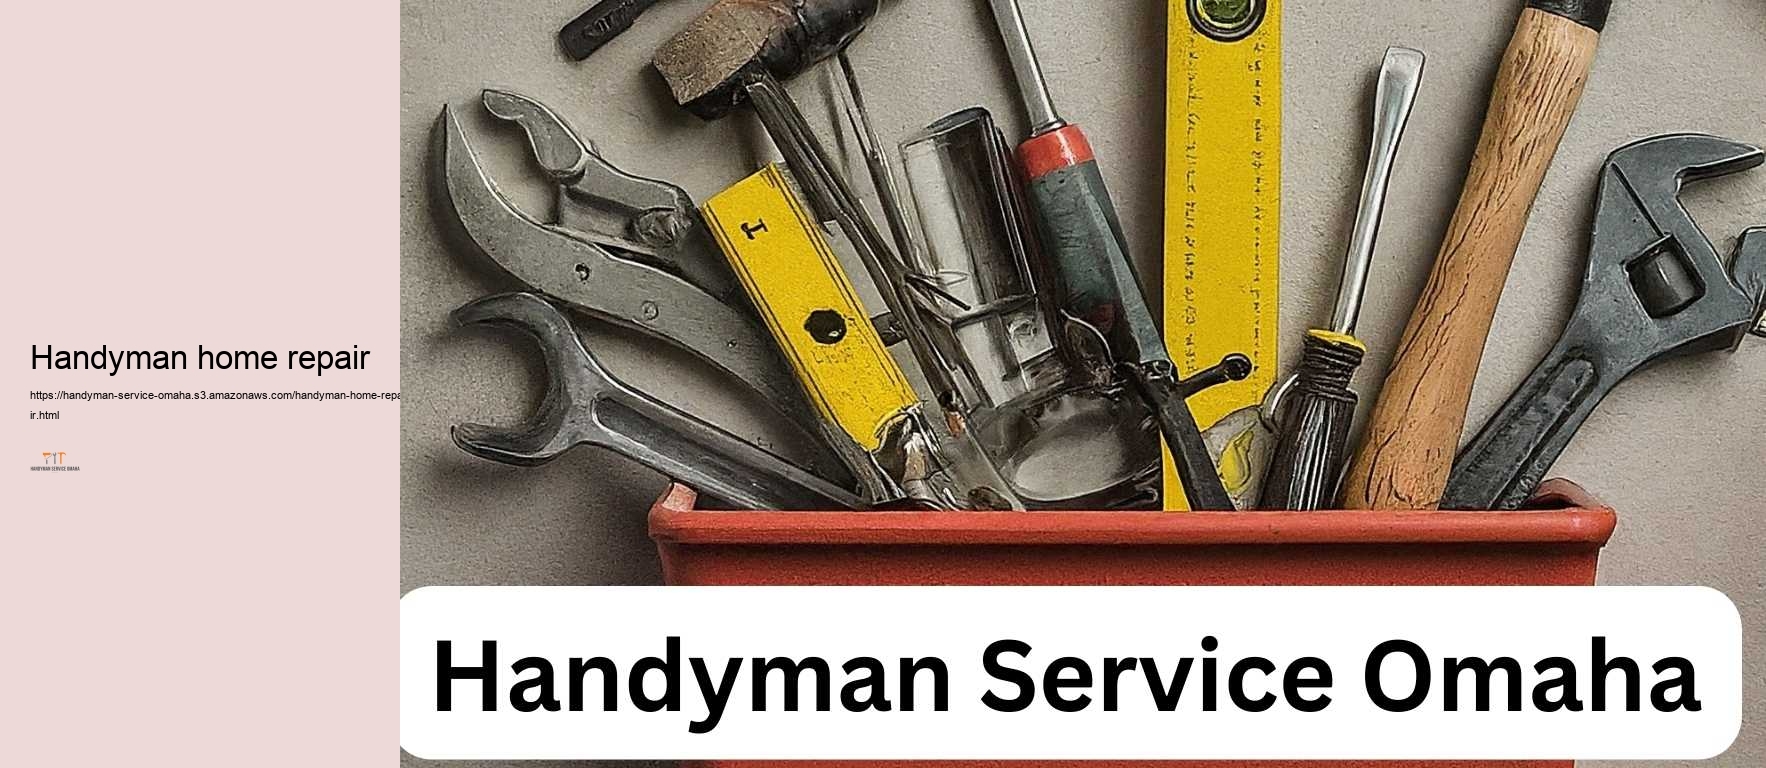 Handyman home repair